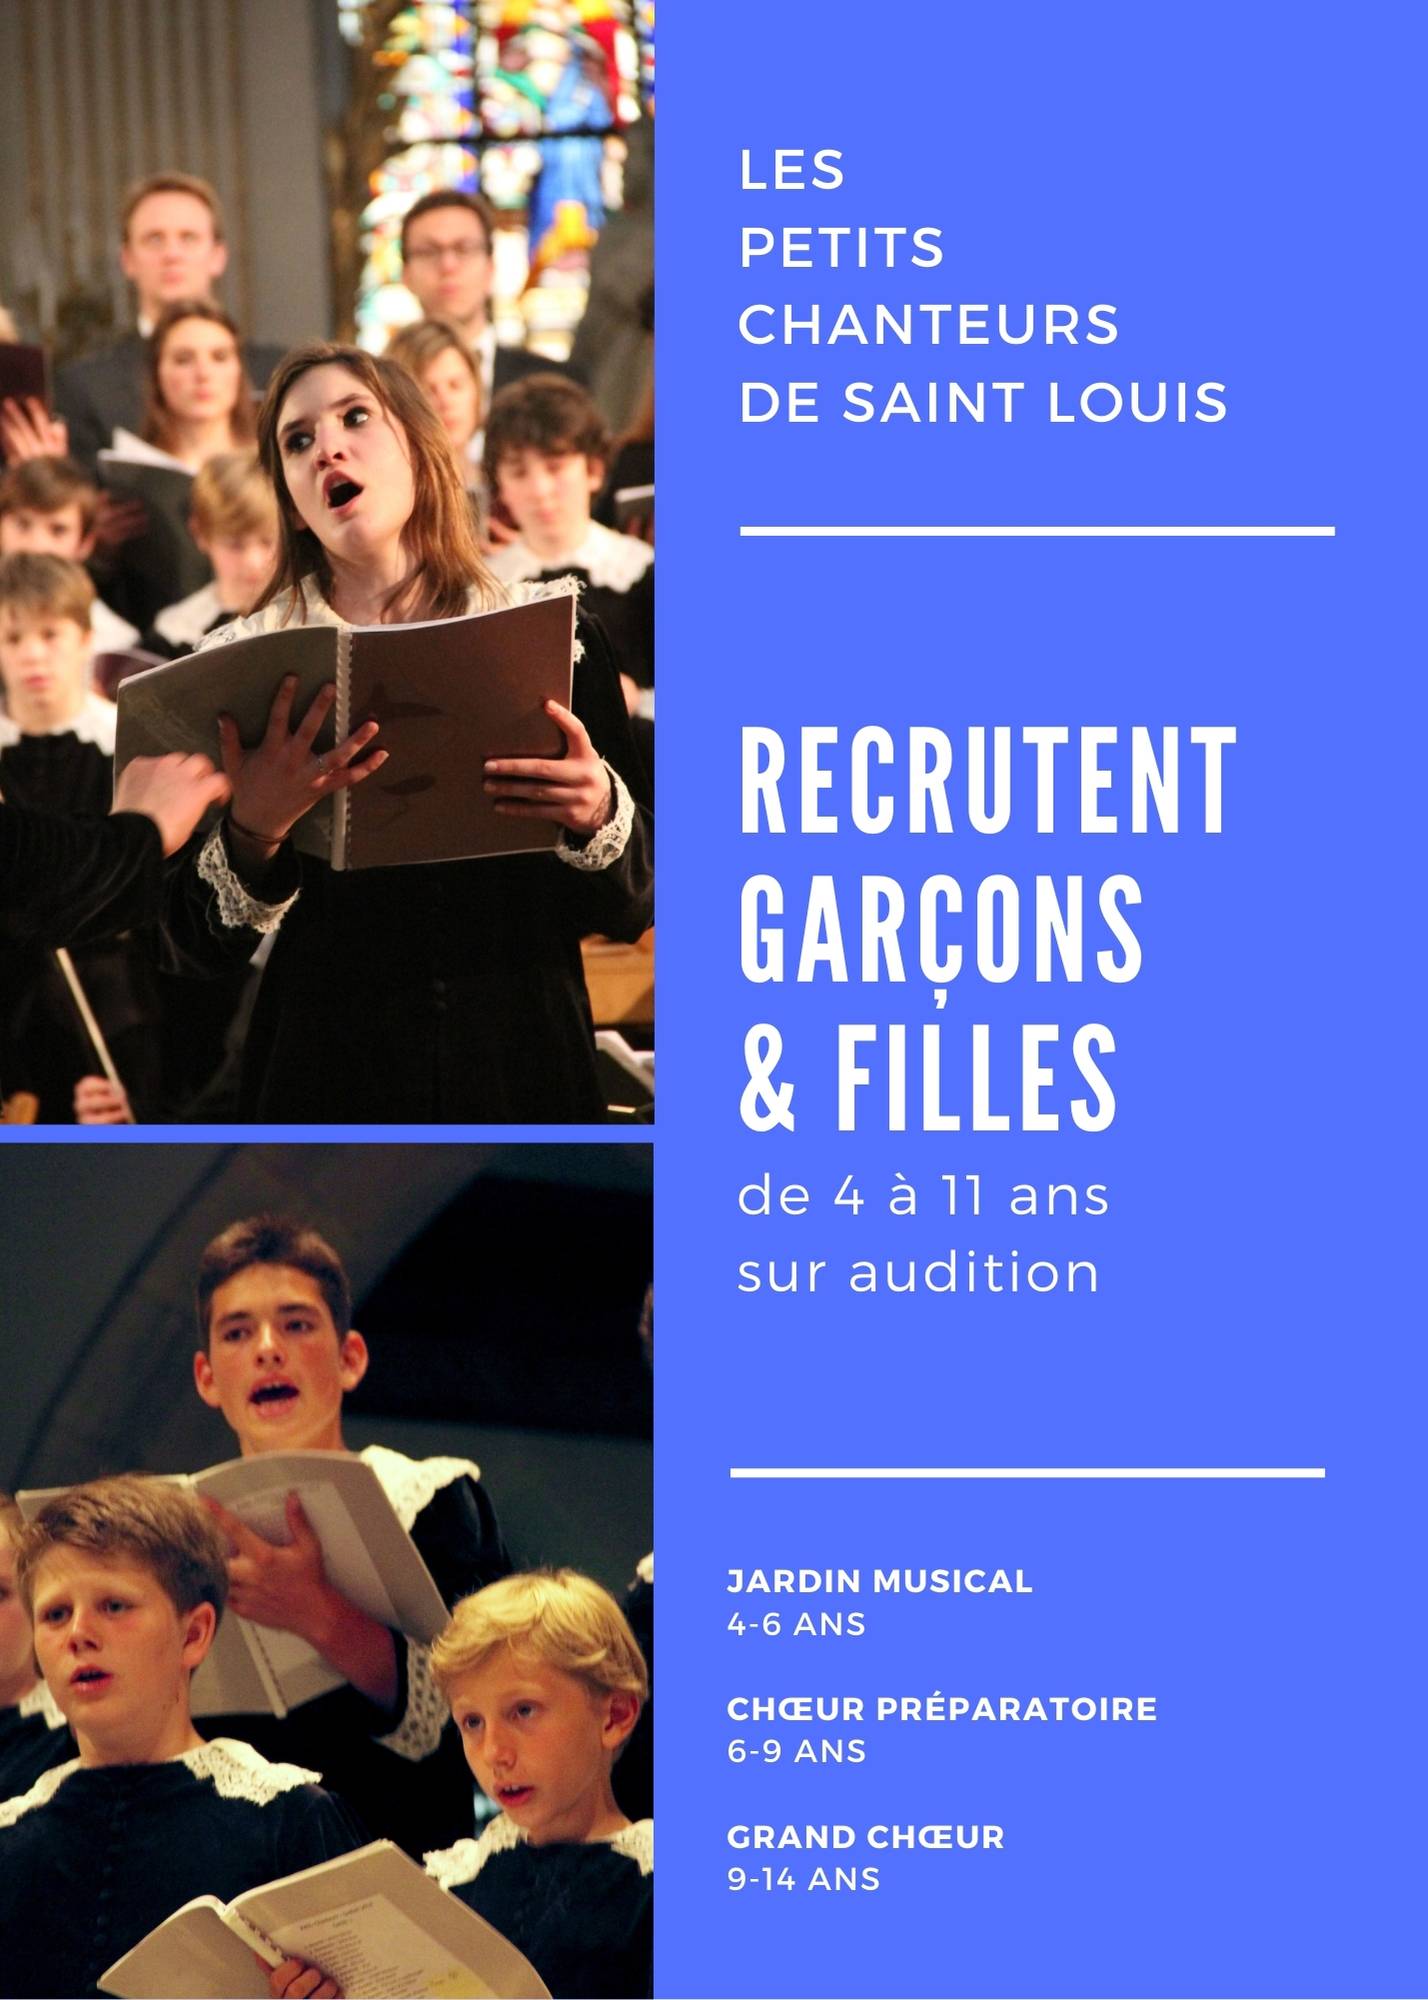 Recrutement chorale enfants paris petit chanteur de saint louis chant audition